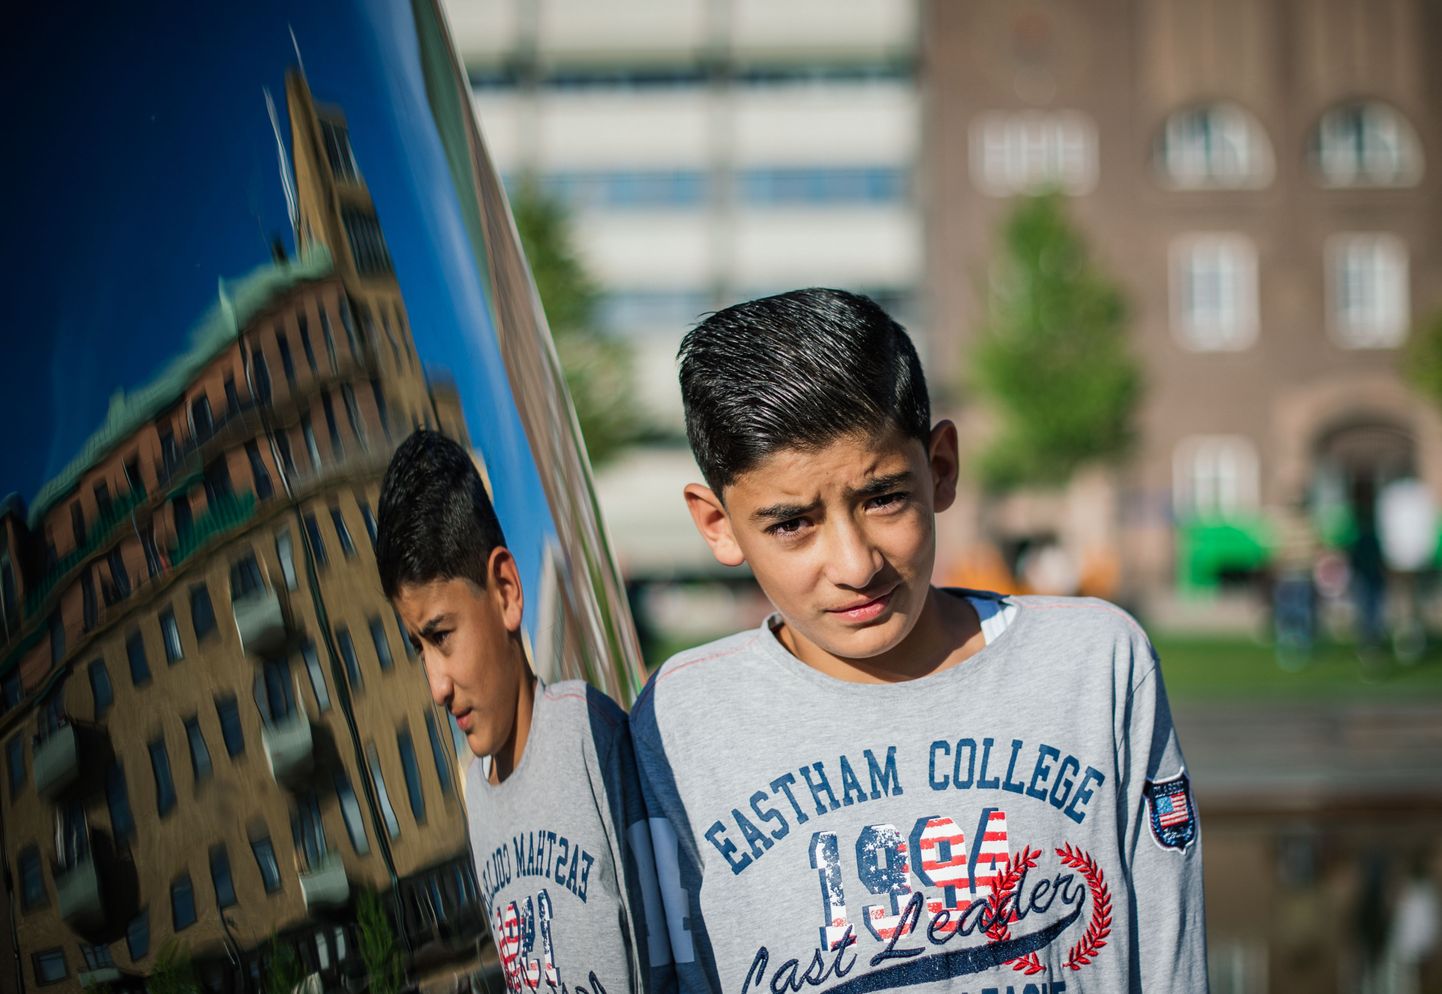 13-aastane Mahmud Zaara on üks möödunud aastal saatjata Rootsi saabunud 35 000 alaealisest.